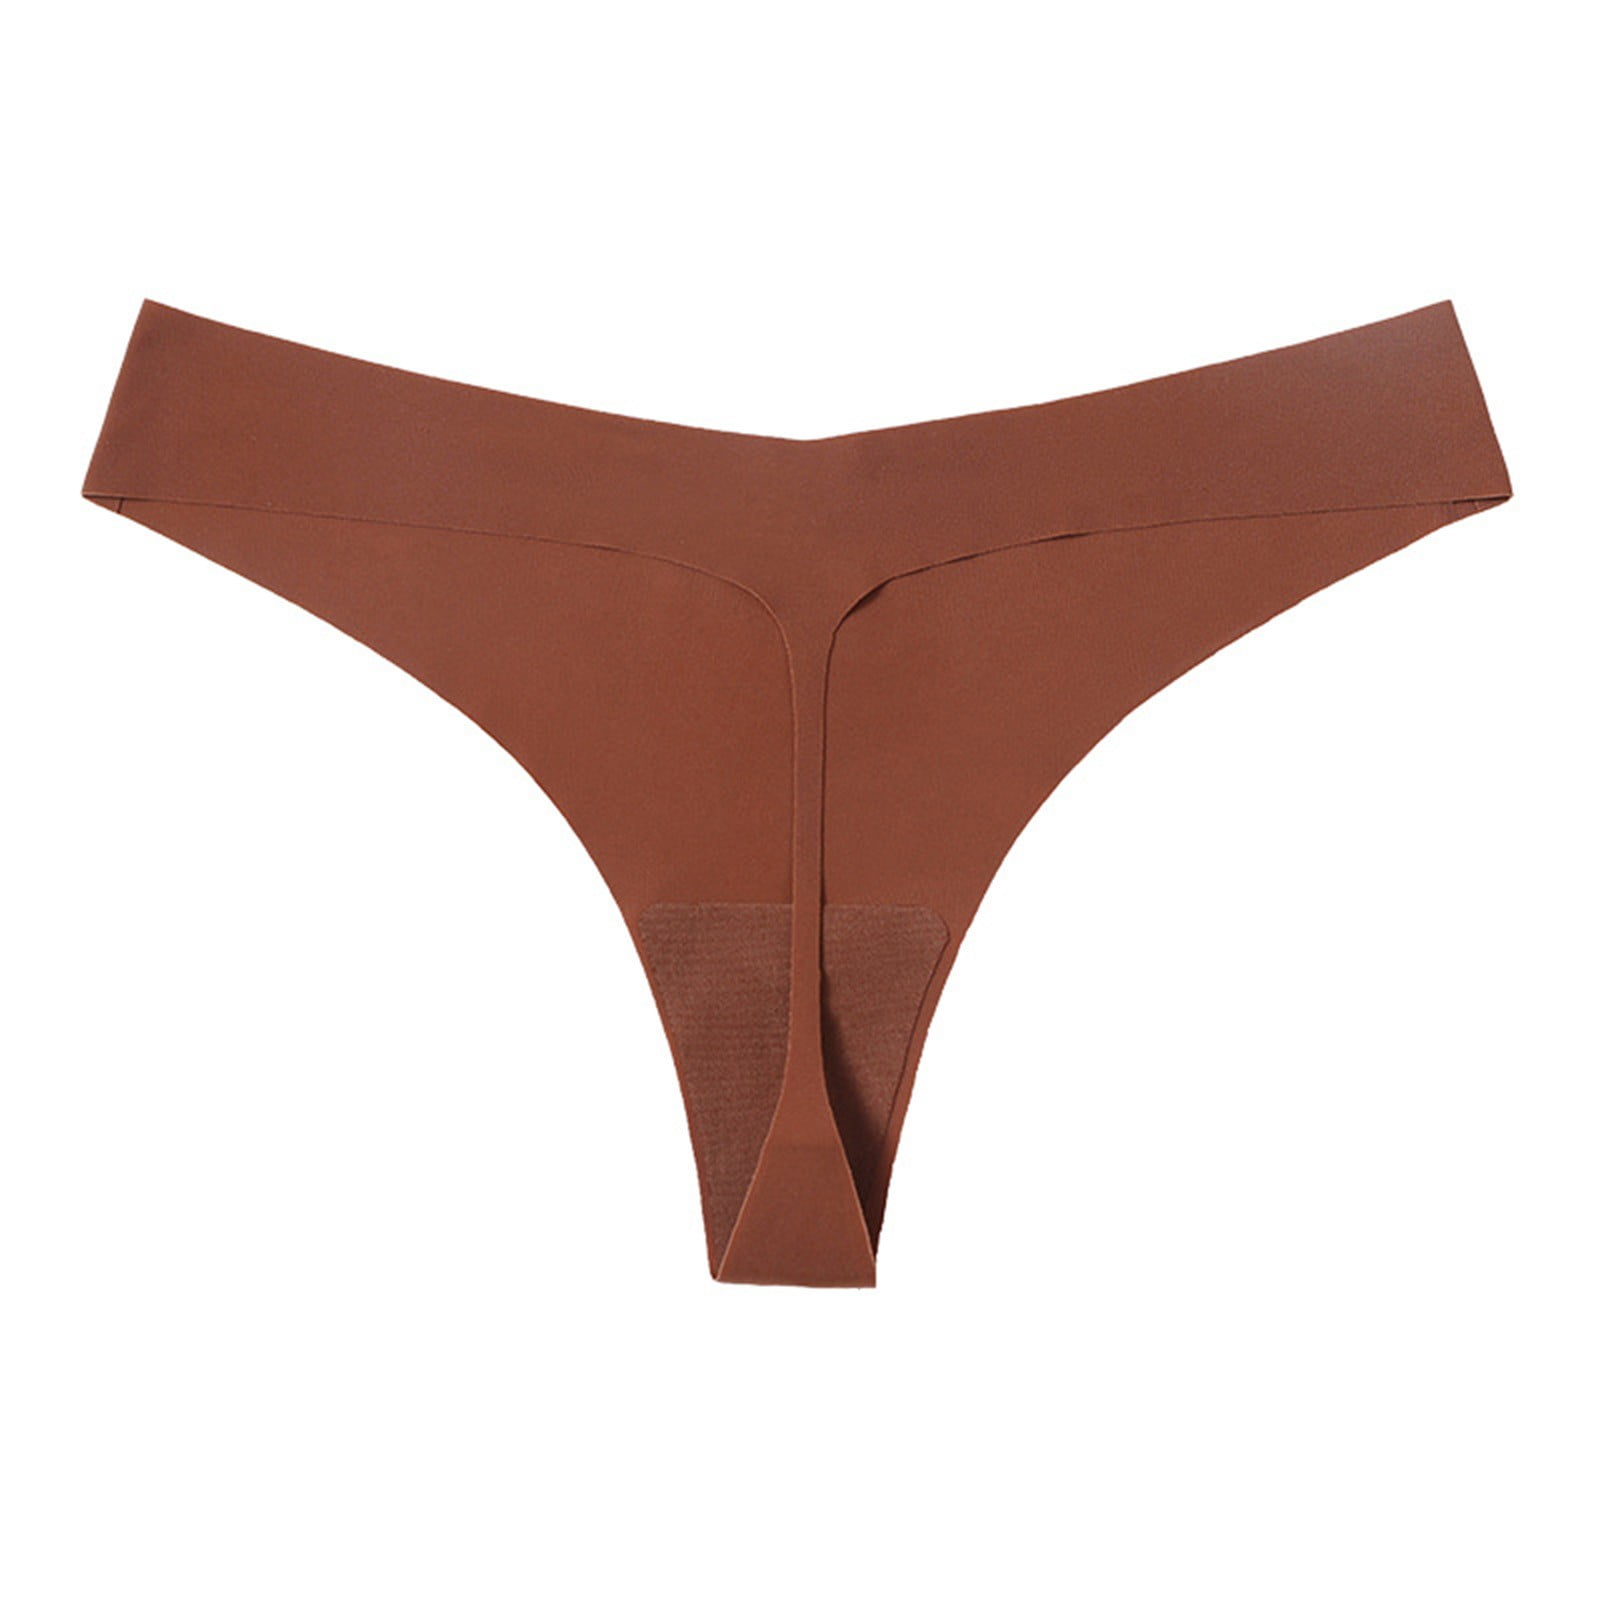 Lingerie Sets for Women Hot Girls Low Waist Panty Underwear Bikini